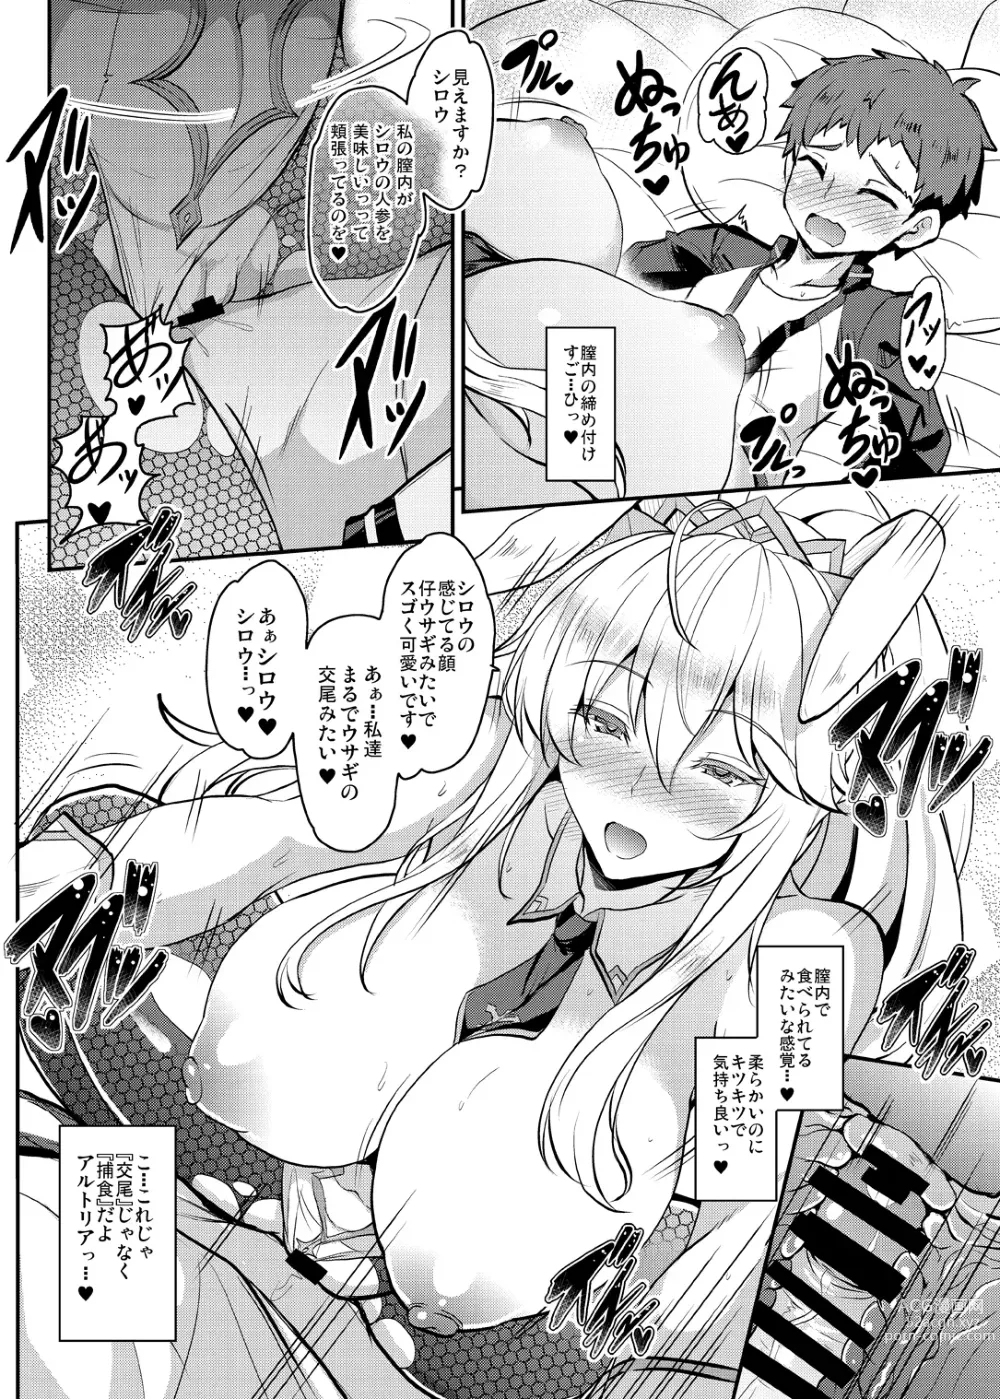 Page 144 of doujinshi Tonari no Chichiou-sama Memories Vol. 1